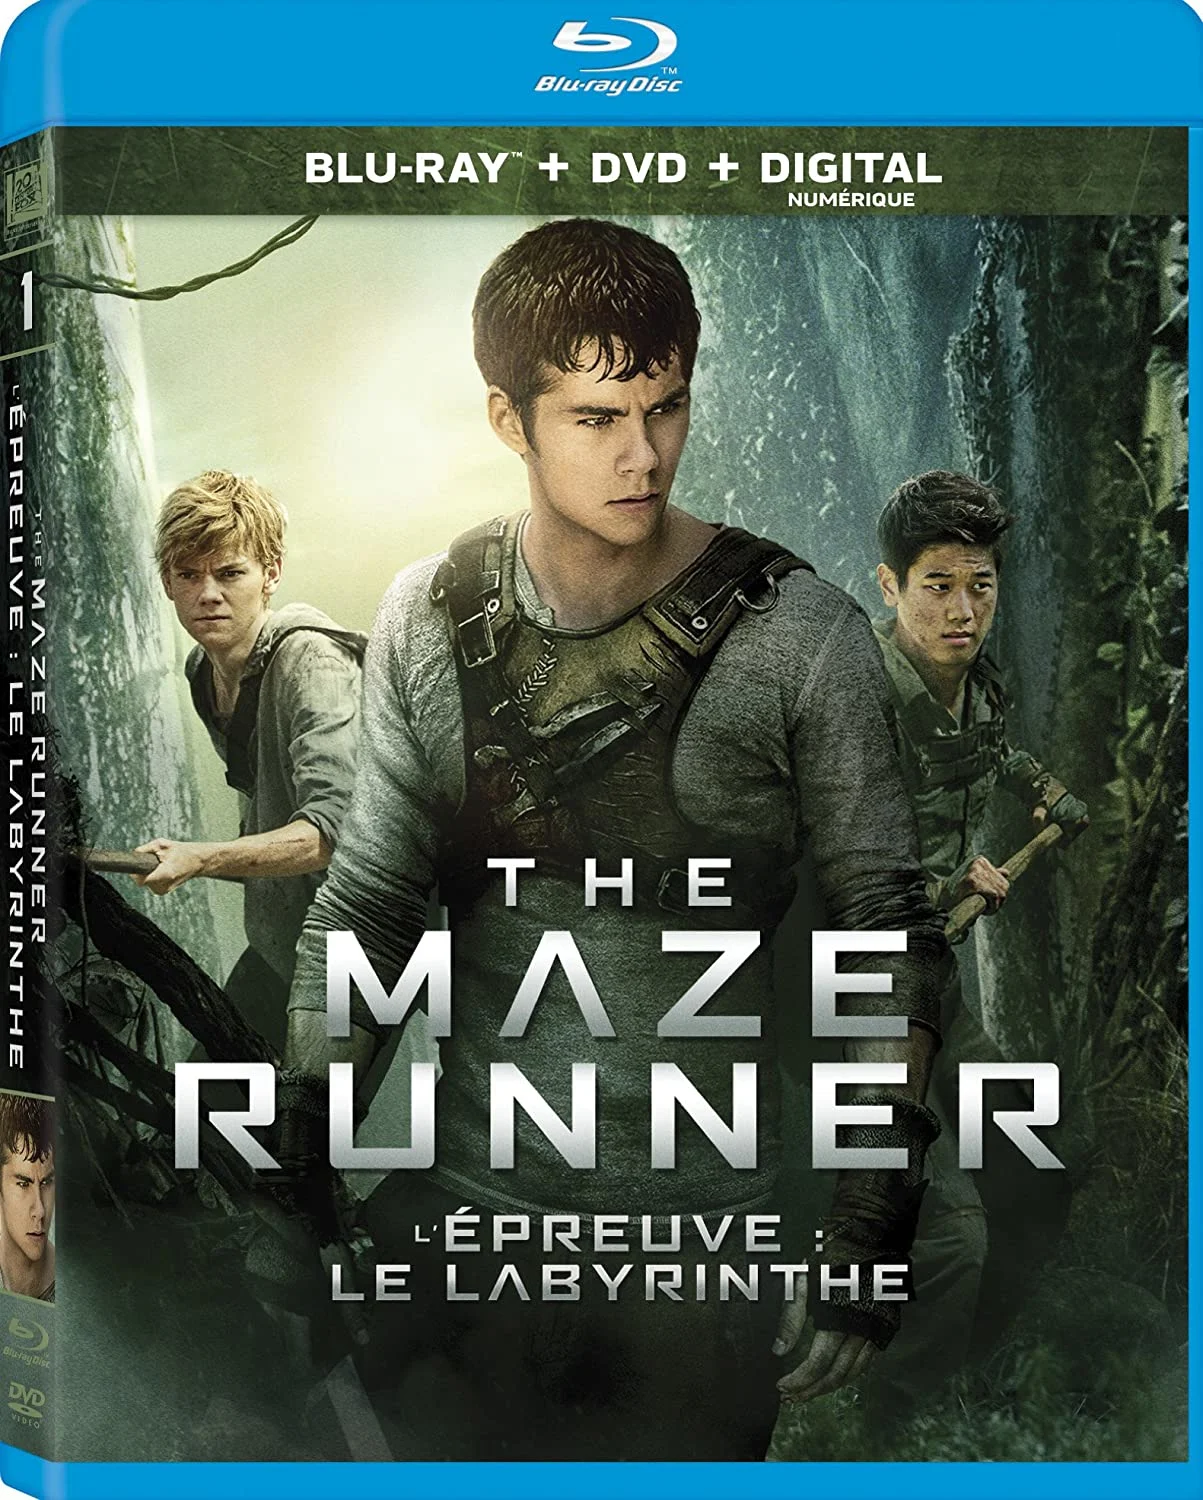 Maze Runner, The (Blu-ray/DVD Combo) on MovieShack